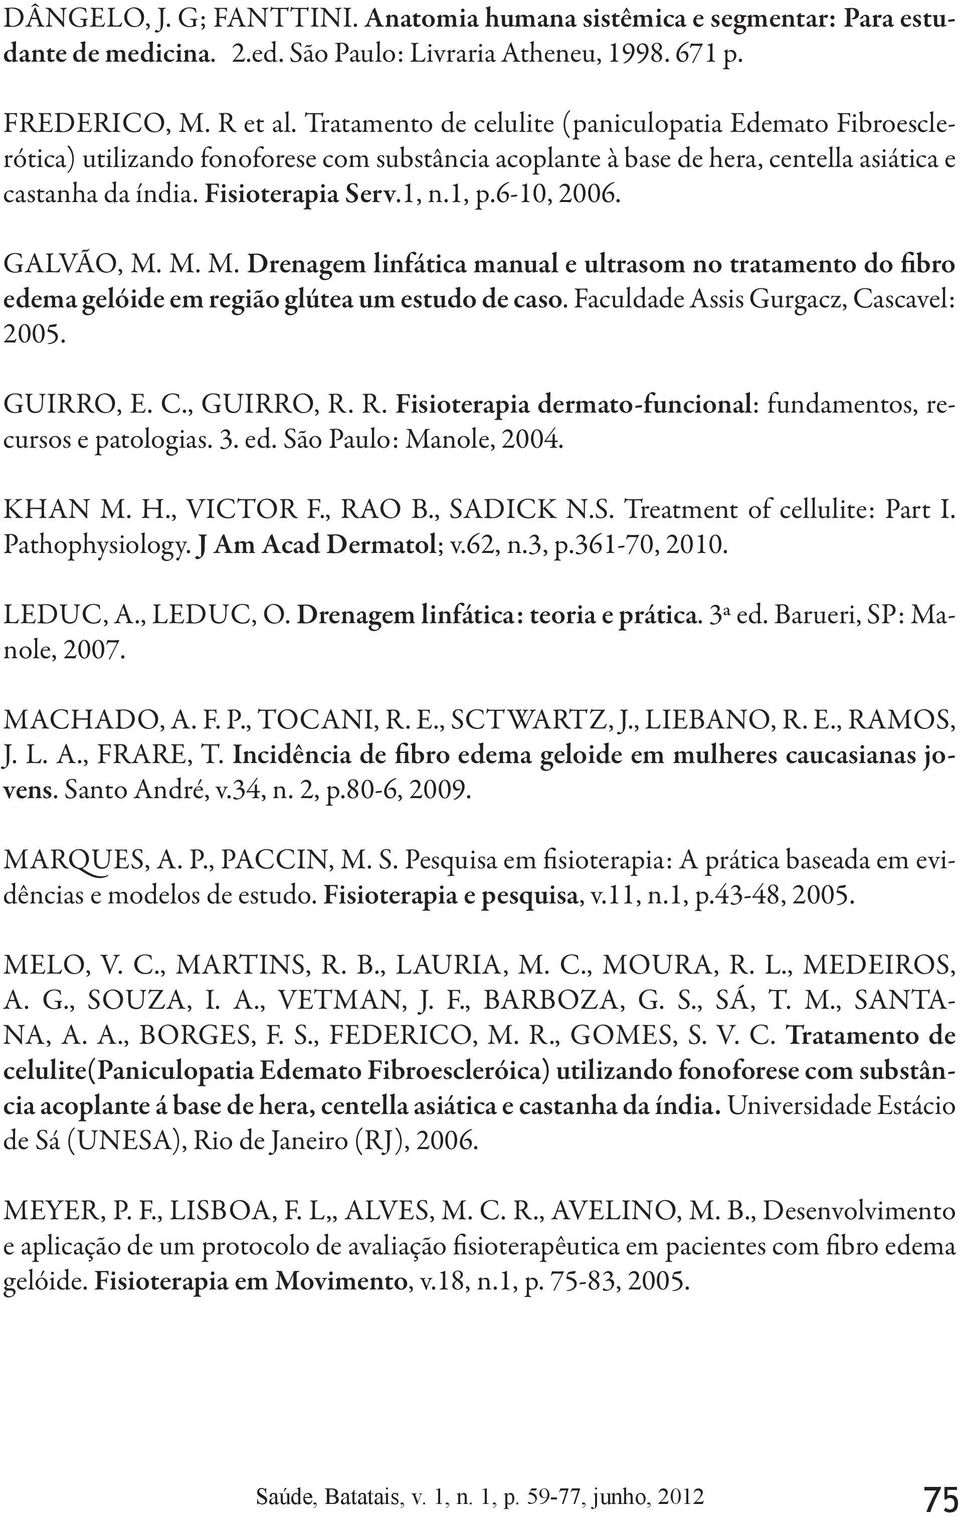 Fisioterapia Serv.1, n.1, p.6-10, 2006. GALVÃO, M. M. M. Drenagem linfática manual e ultrasom no tratamento do fibro edema gelóide em região glútea um estudo de caso.